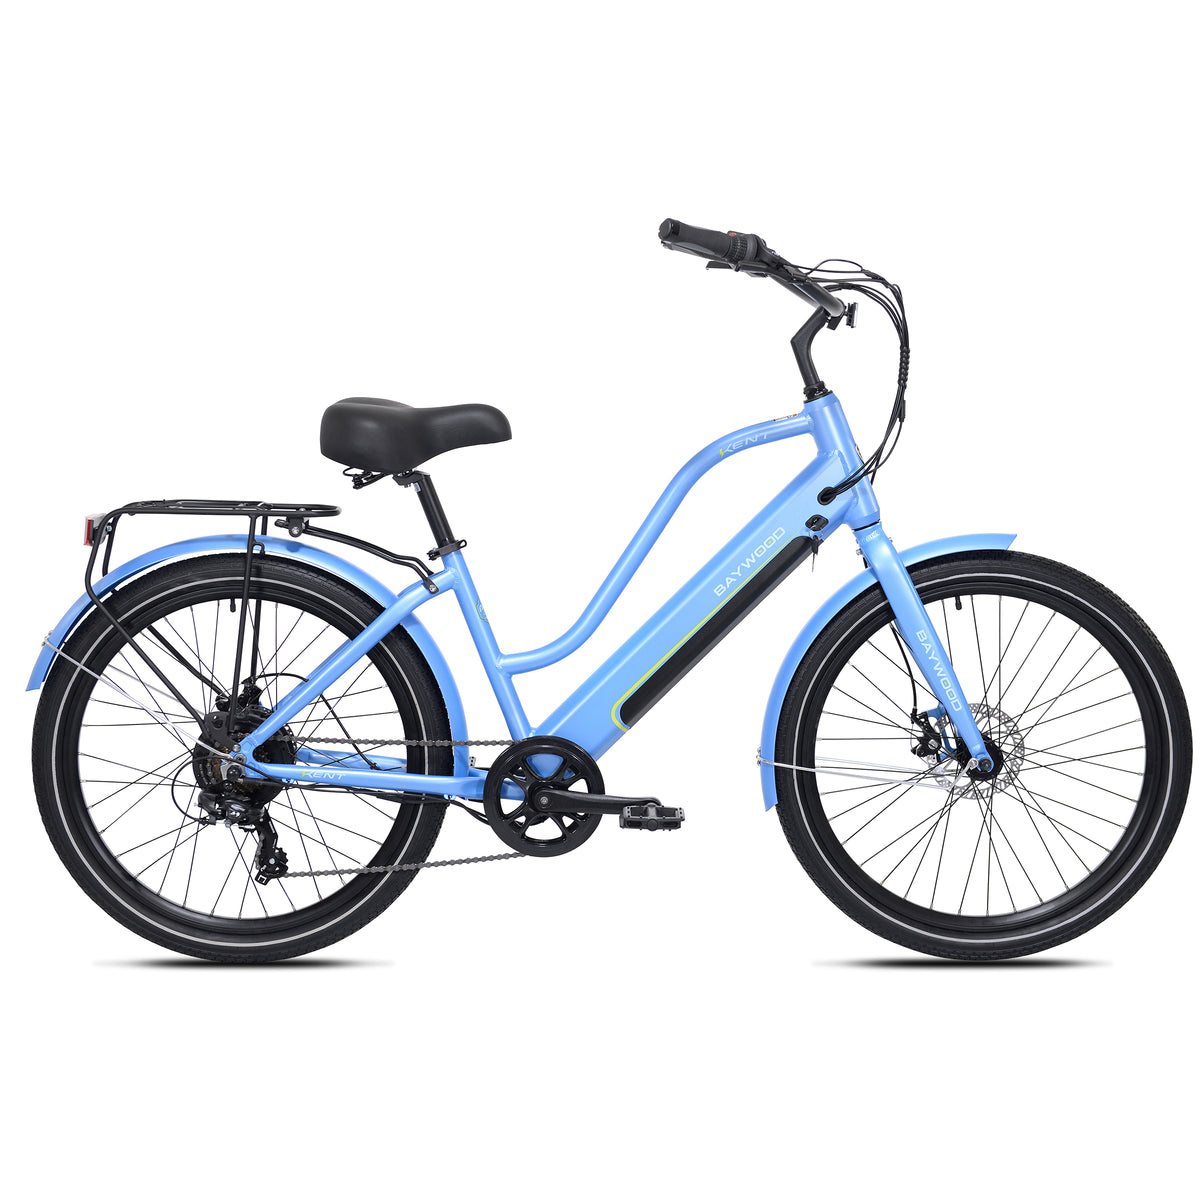 26" Kent Baywood E-Bike | Electric Cruiser Bike for Adults Ages 14+